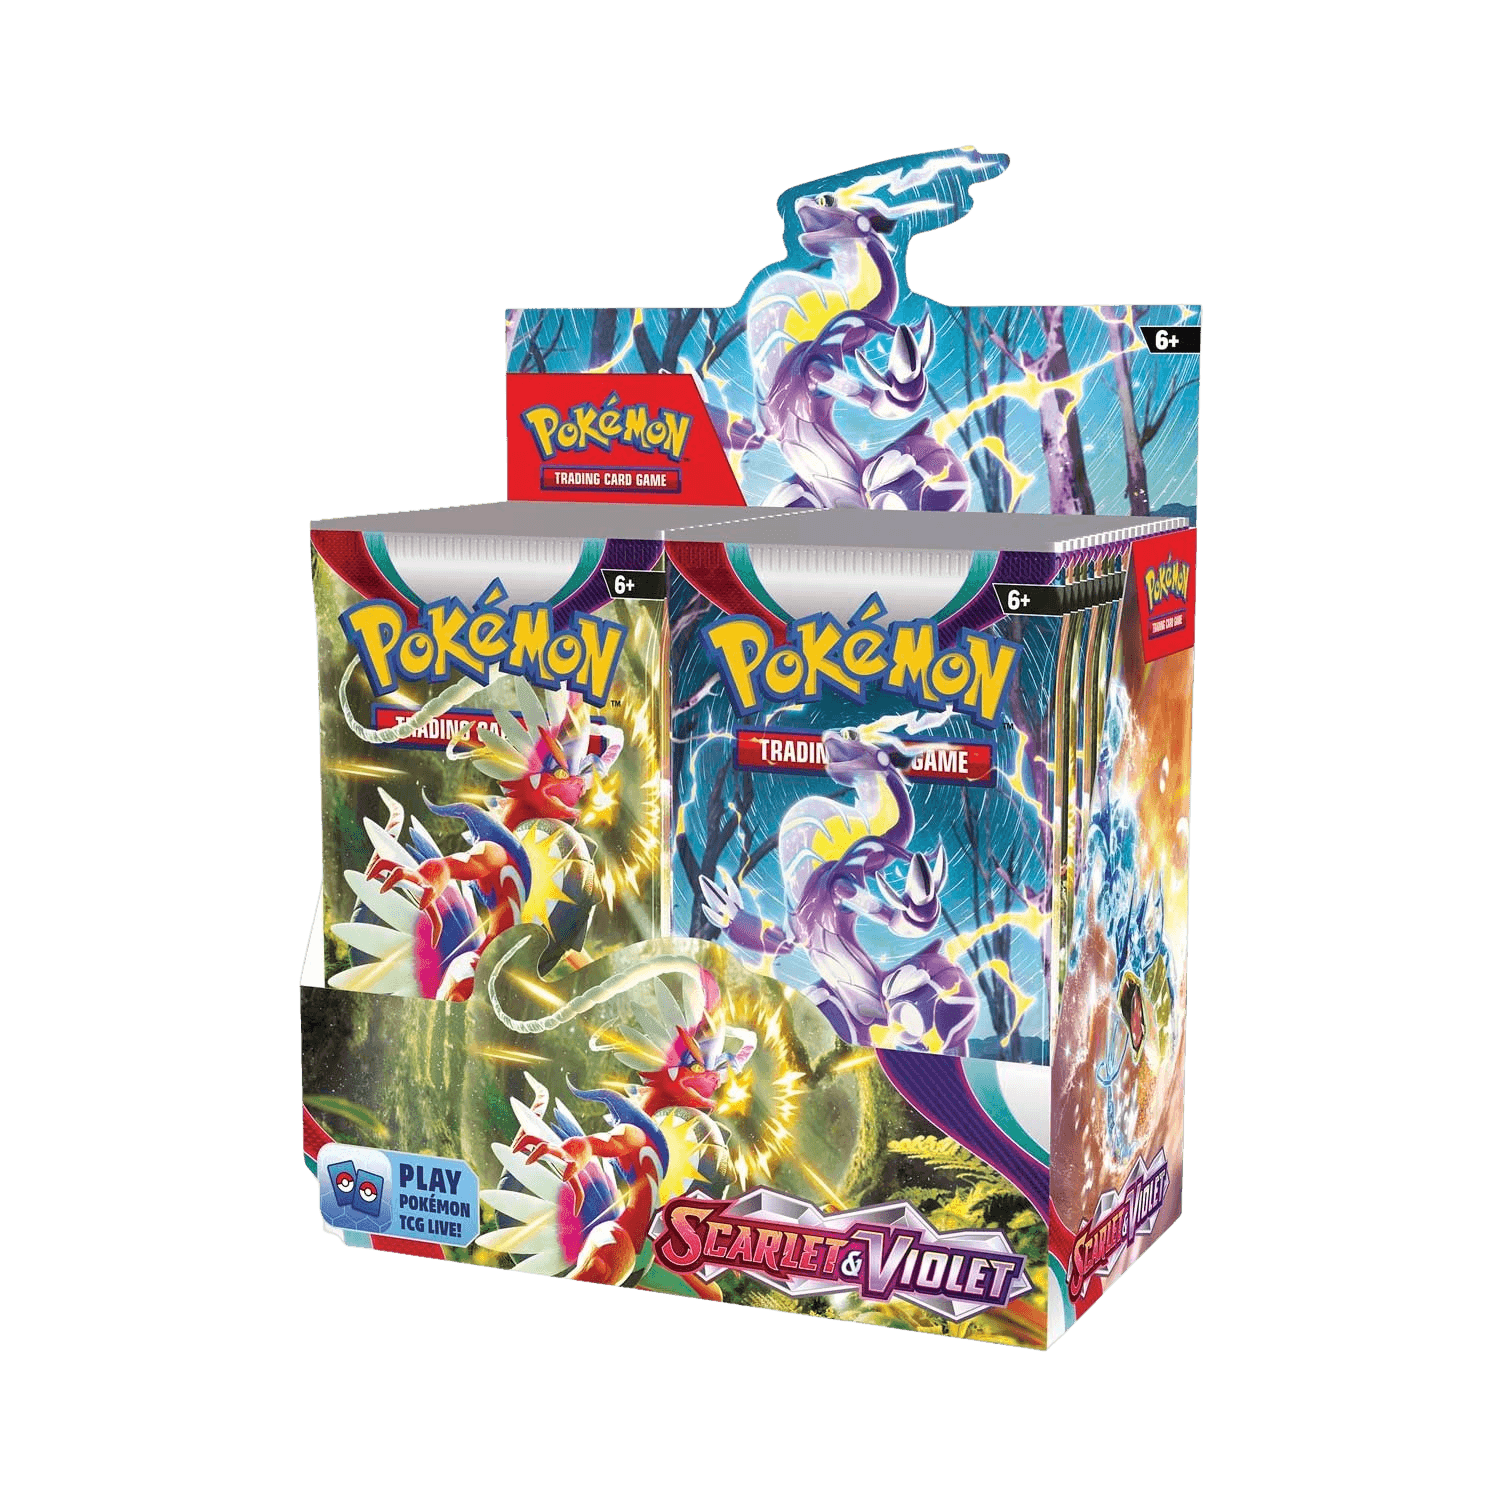 Pokemon TCG - Scarlet & Violet Base Set - Booster Box (36 Packs) - The Card Vault